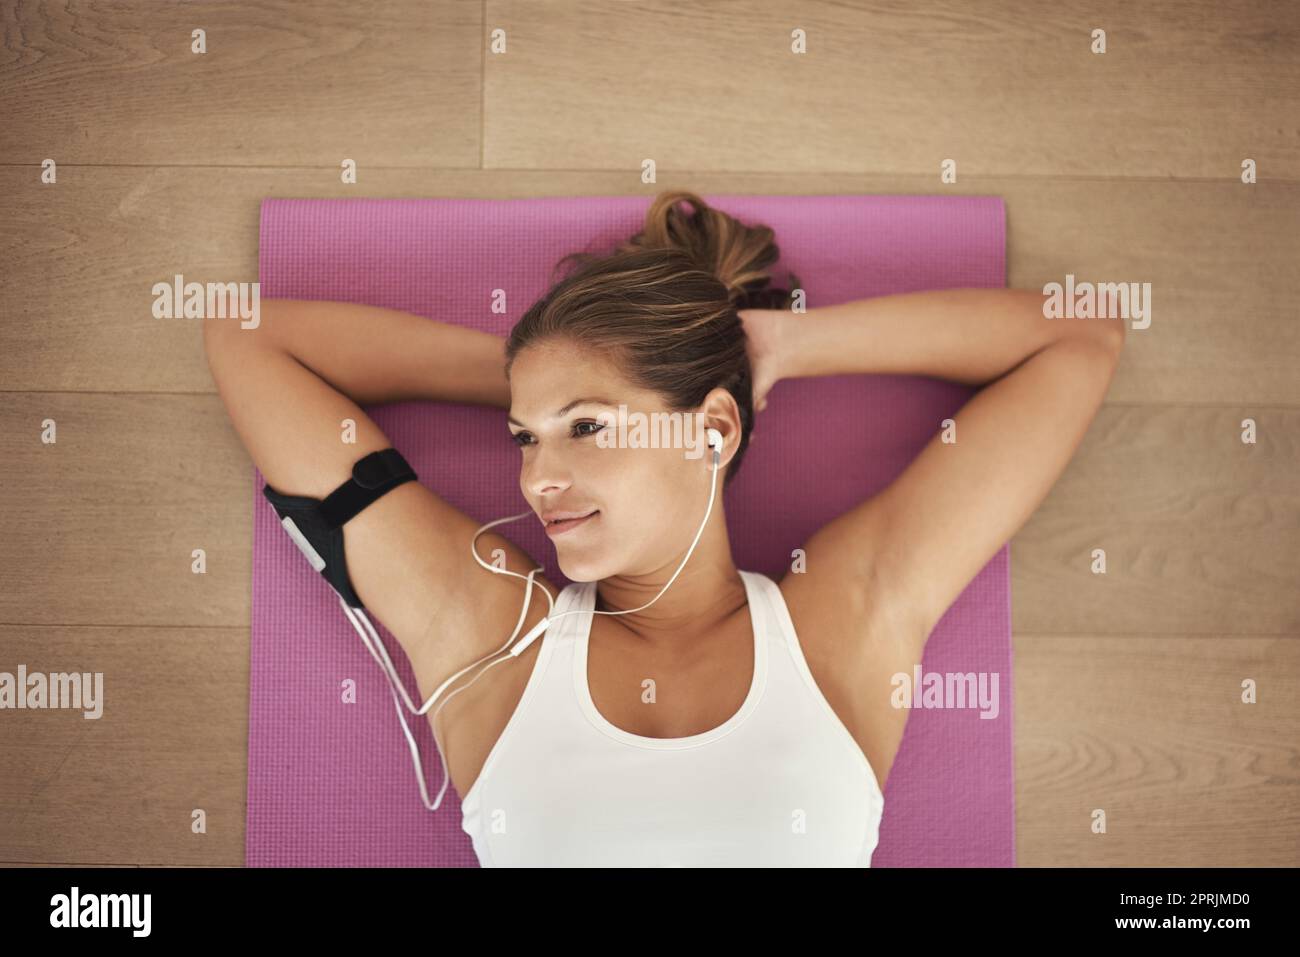 Tun Sie, was Sie glücklich macht. Aufnahme einer jungen Frau, die Musik hört, während sie auf ihrer Yogamatte liegt. Stockfoto